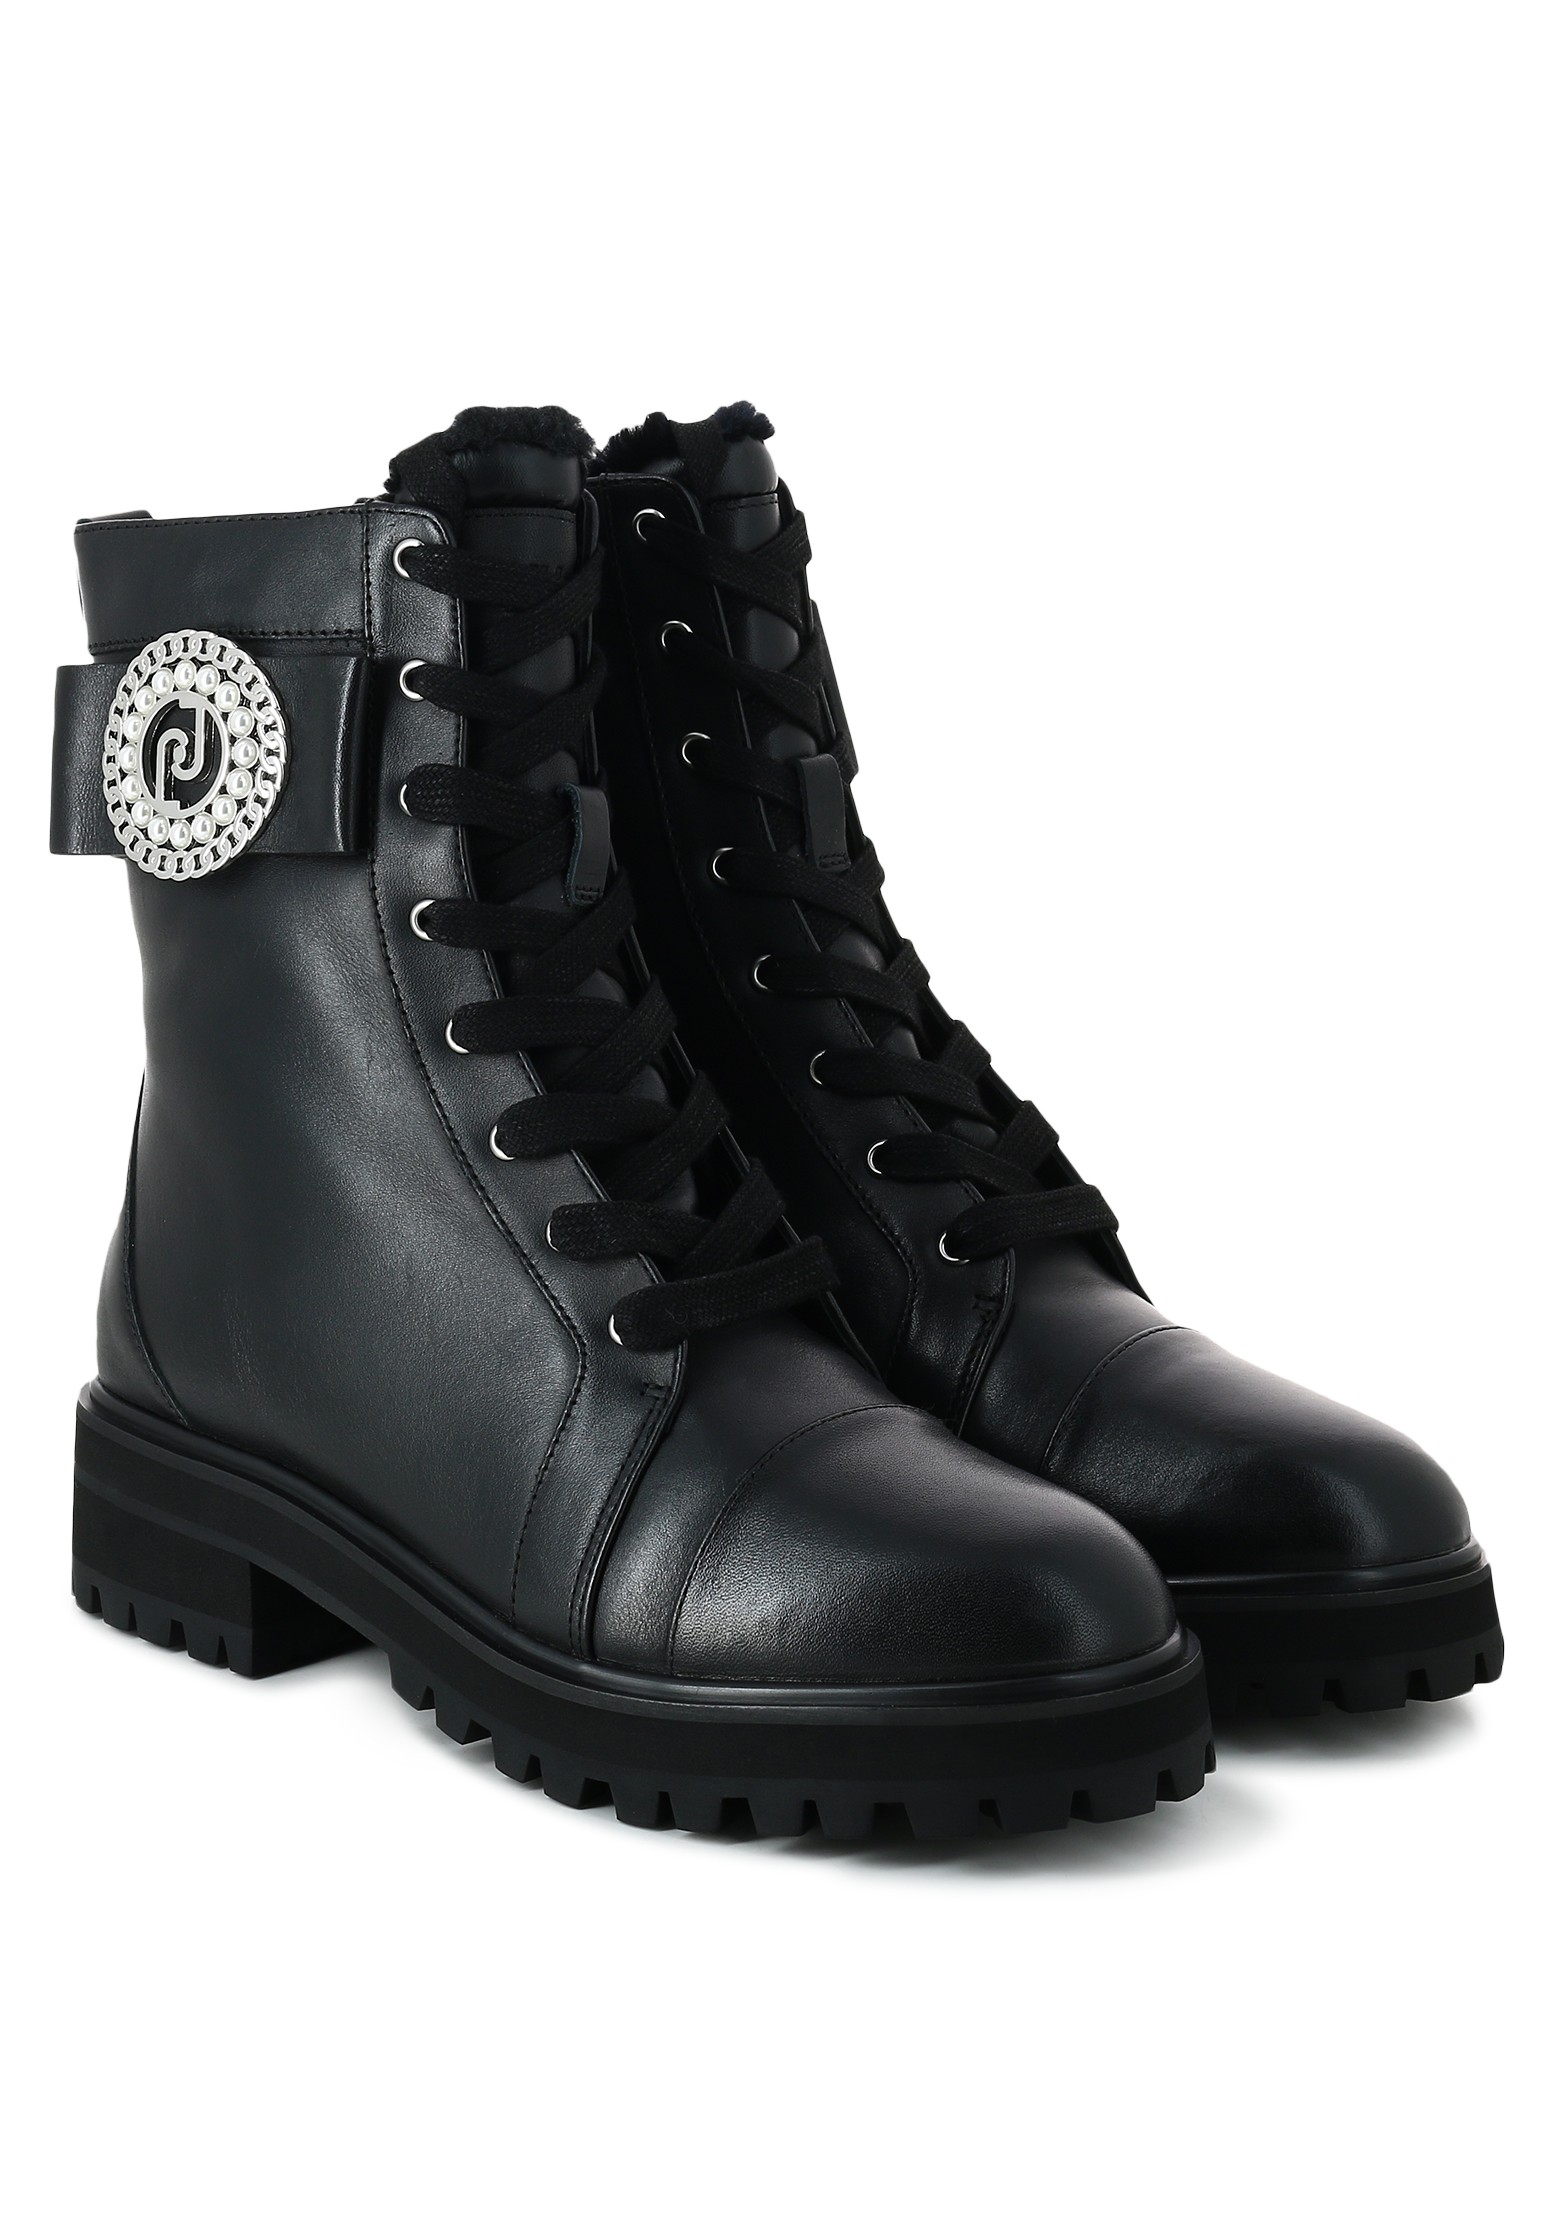 Ботинки женские LIU JO 135497 черные 40 EU